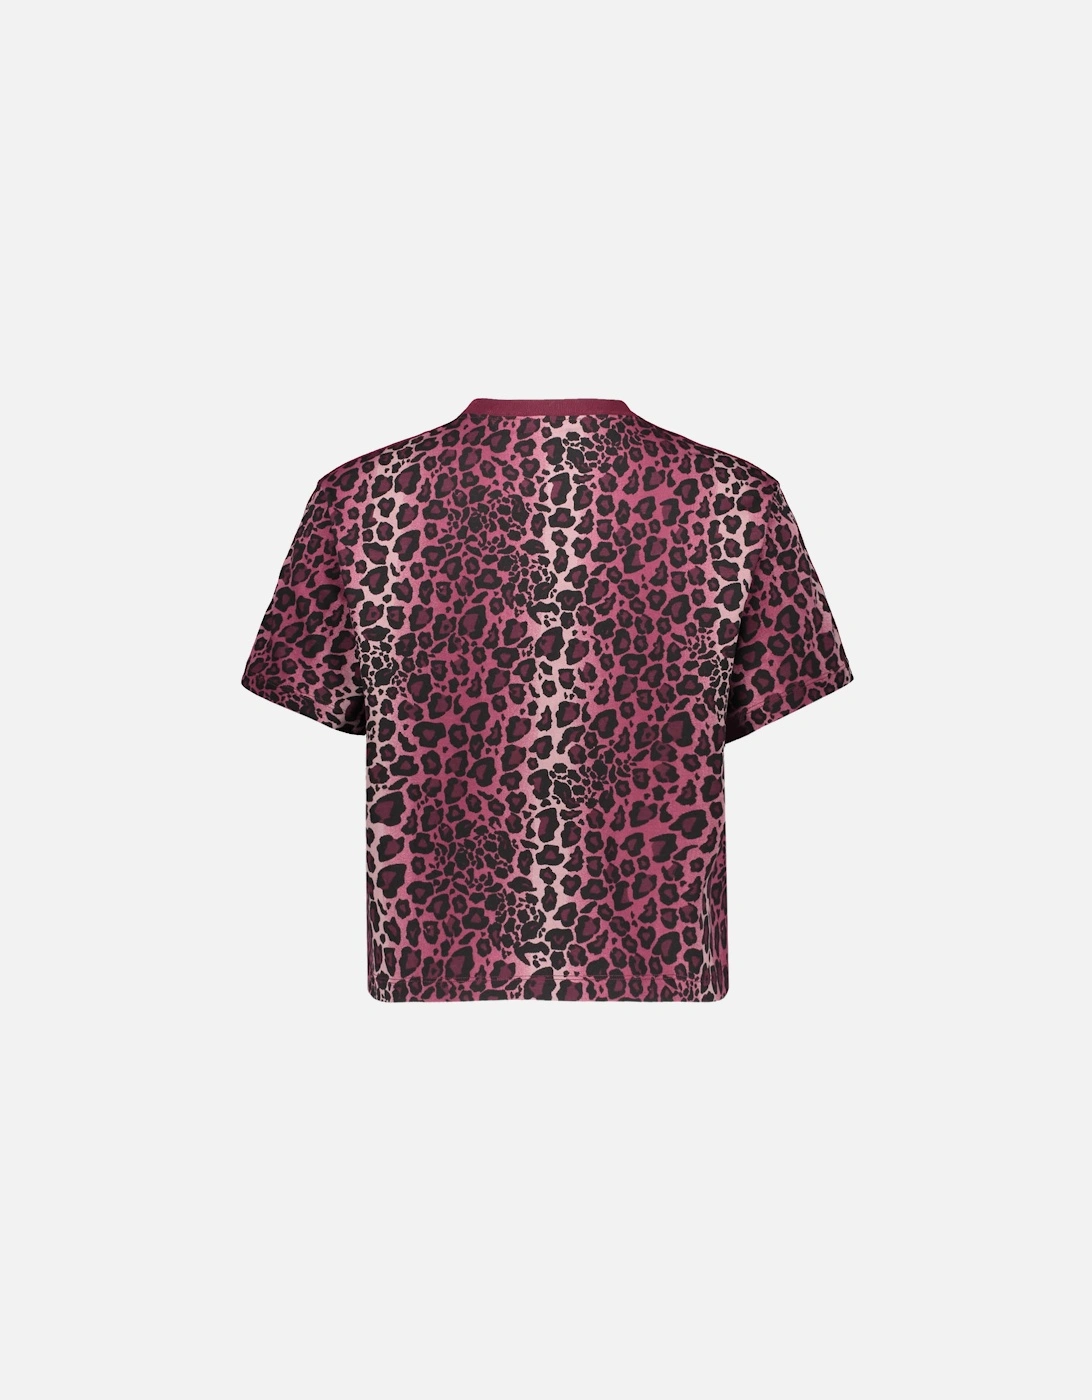 Women's T-shirt - Pink leopard Print